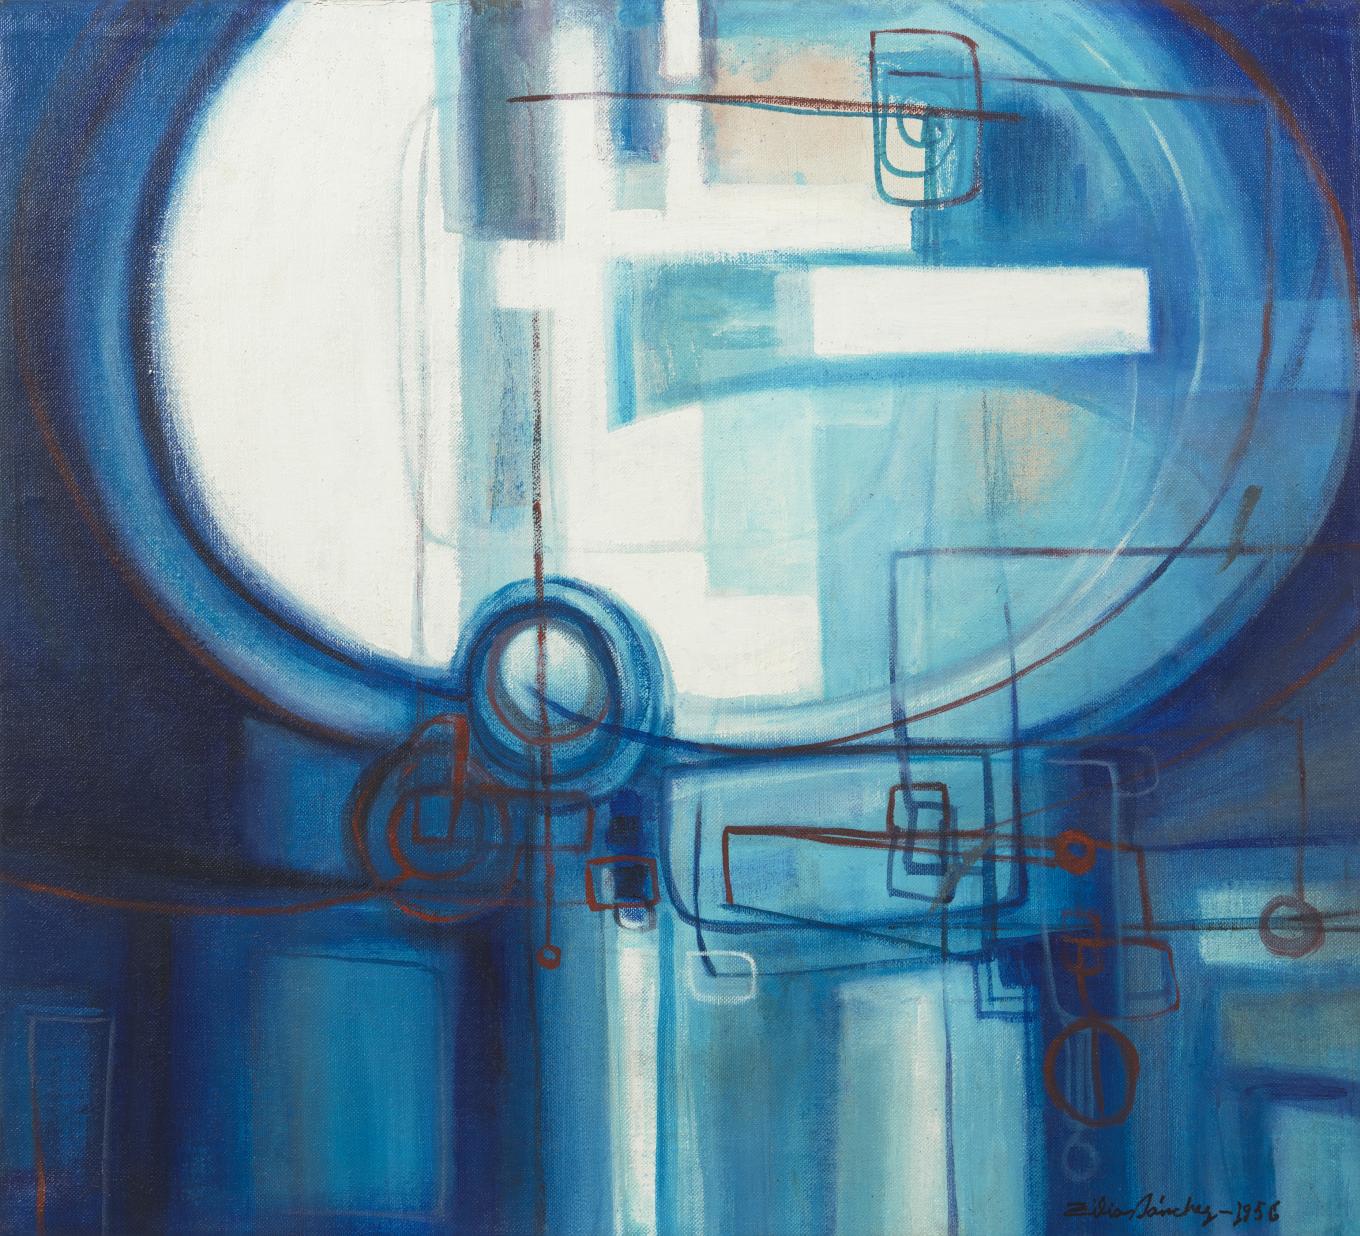 Zilia SÃ¡nchez, Azul azul (Blue Blue), 1956. Acrylic on canvas, 21 Ã 23 in., Collection of the artist, Courtesy Galerie Lelong & Co., New York